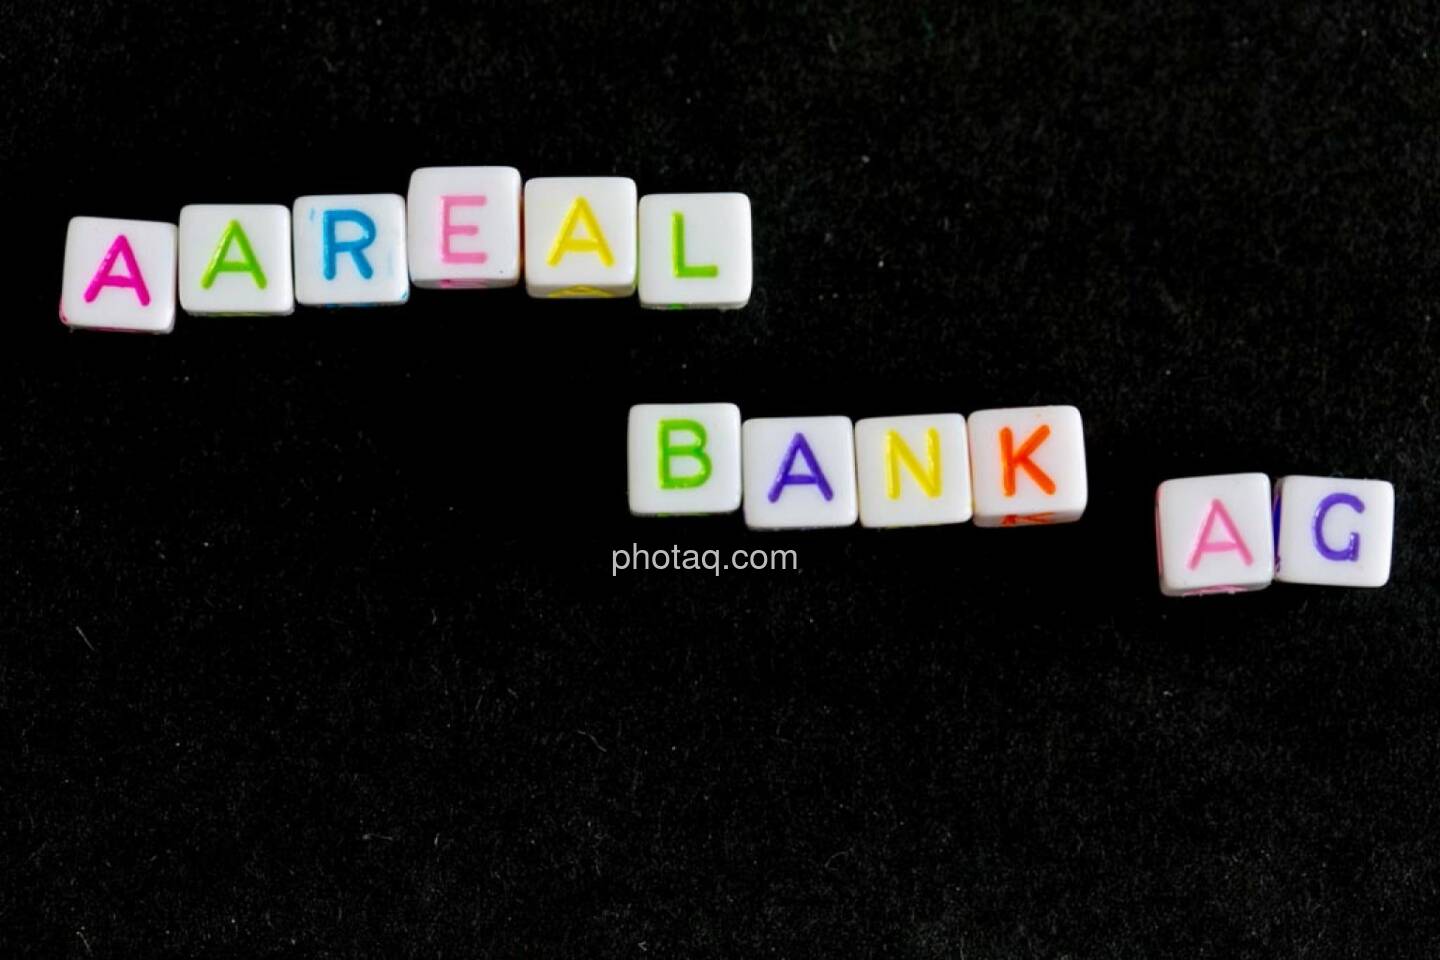 Areal Bank